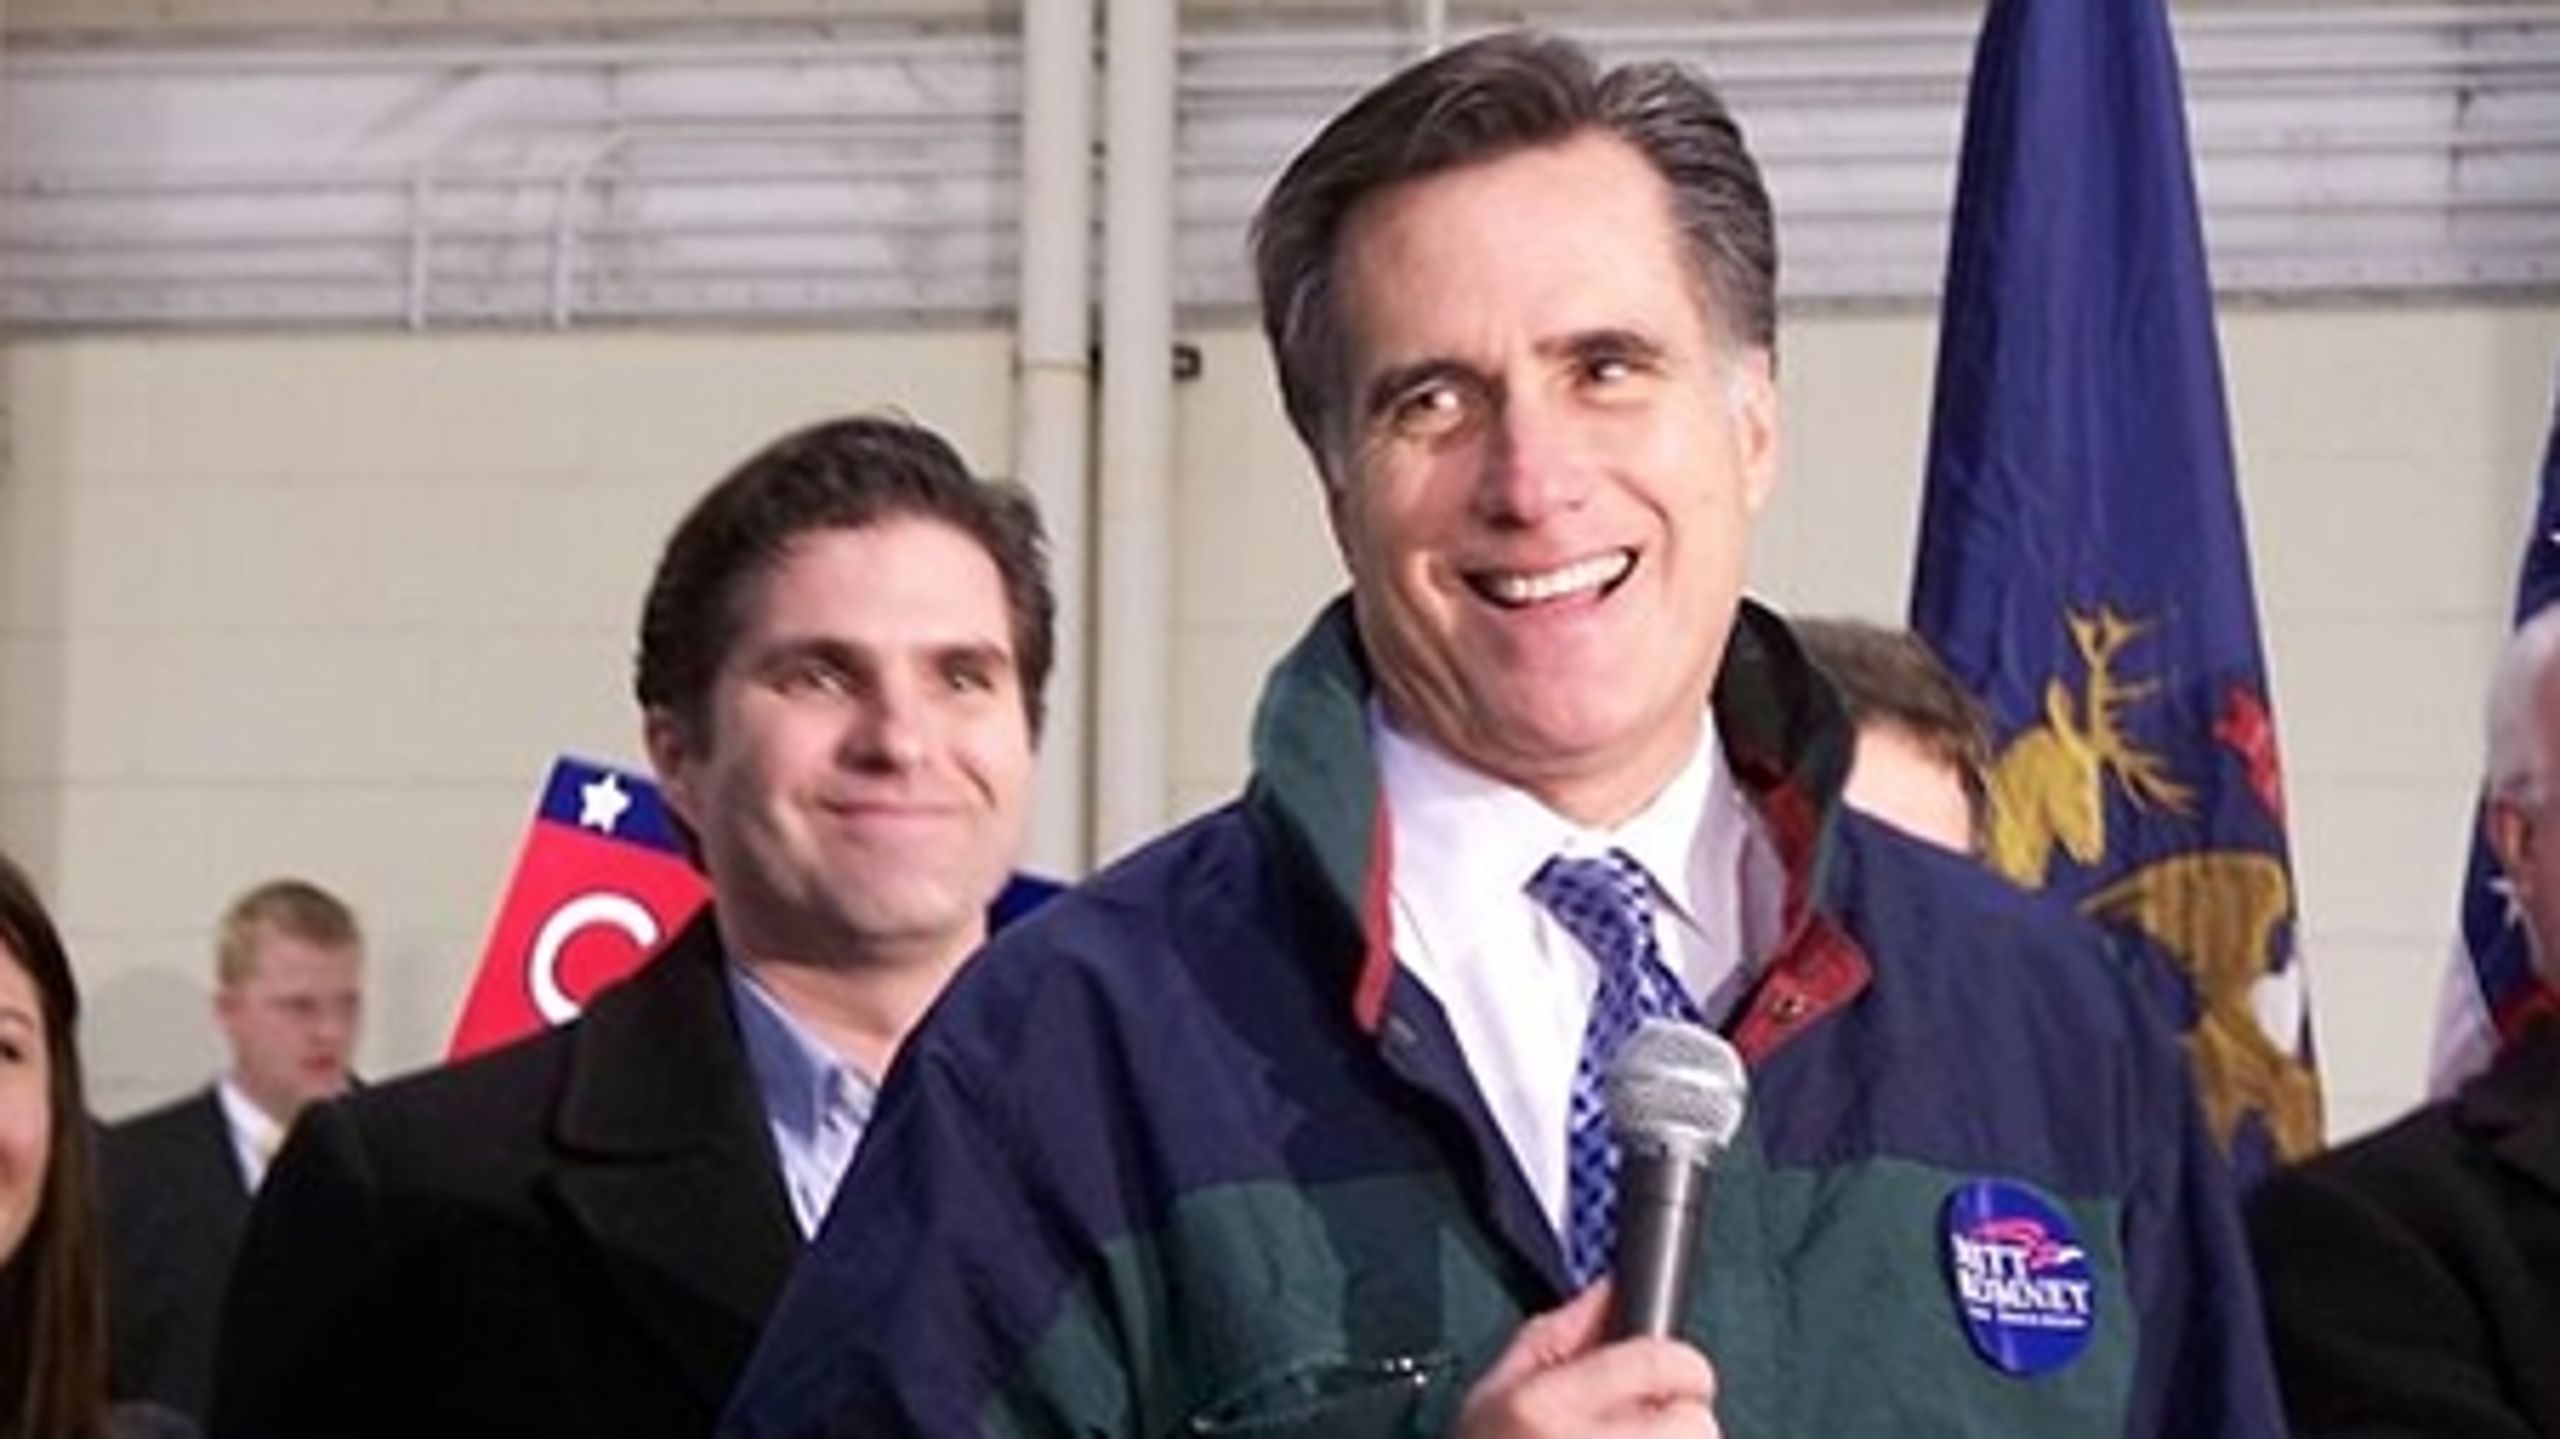 Romney har grund til at være glad –
antallet af delegerede er med ham